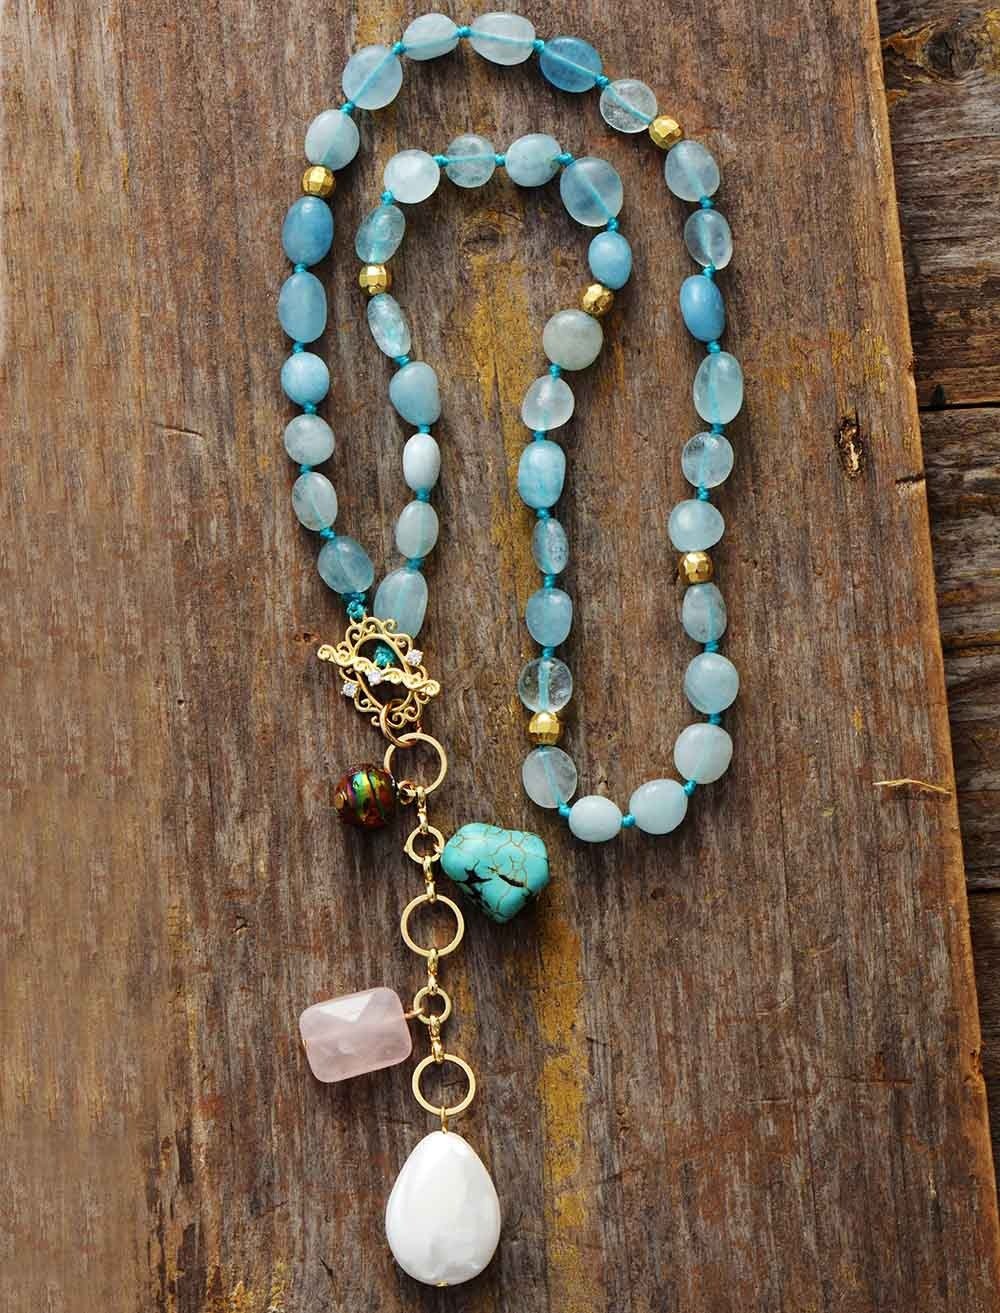 Bygone Era Aquamarine Beads Necklace-Your Soul Place